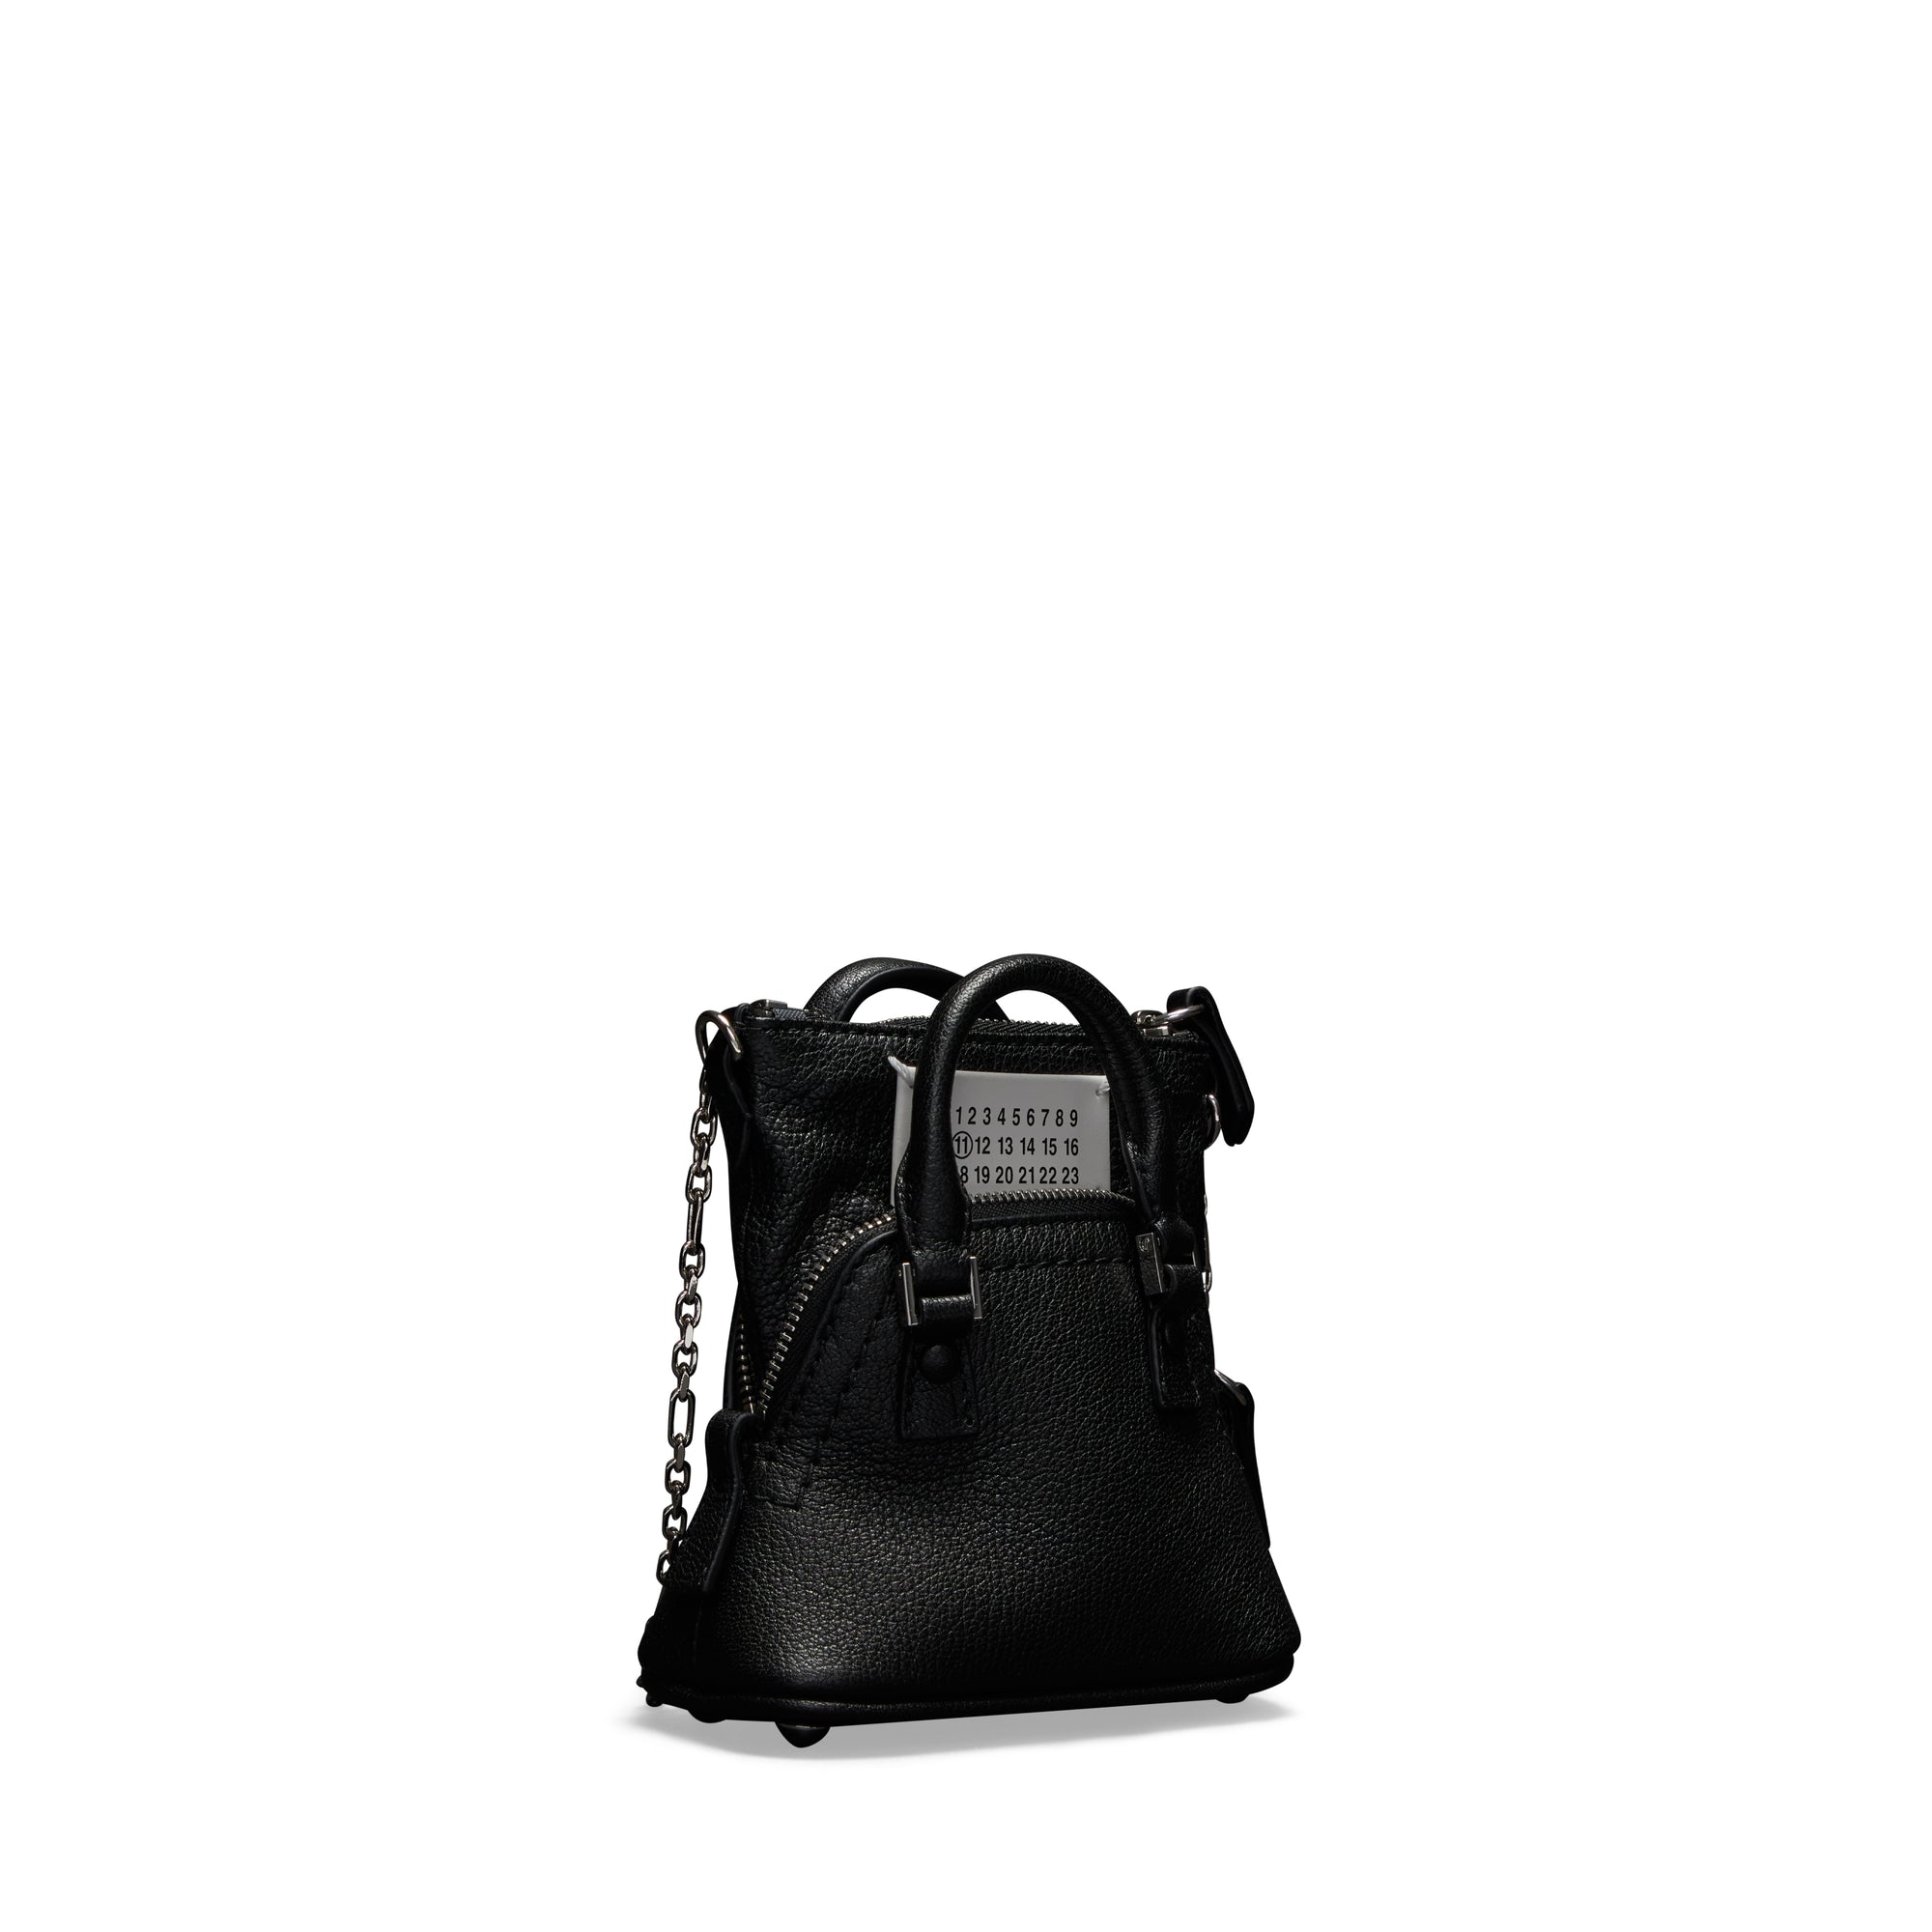 Maison Margiela - Women’s 5AC Classique Baby Bag - (Black) view 2